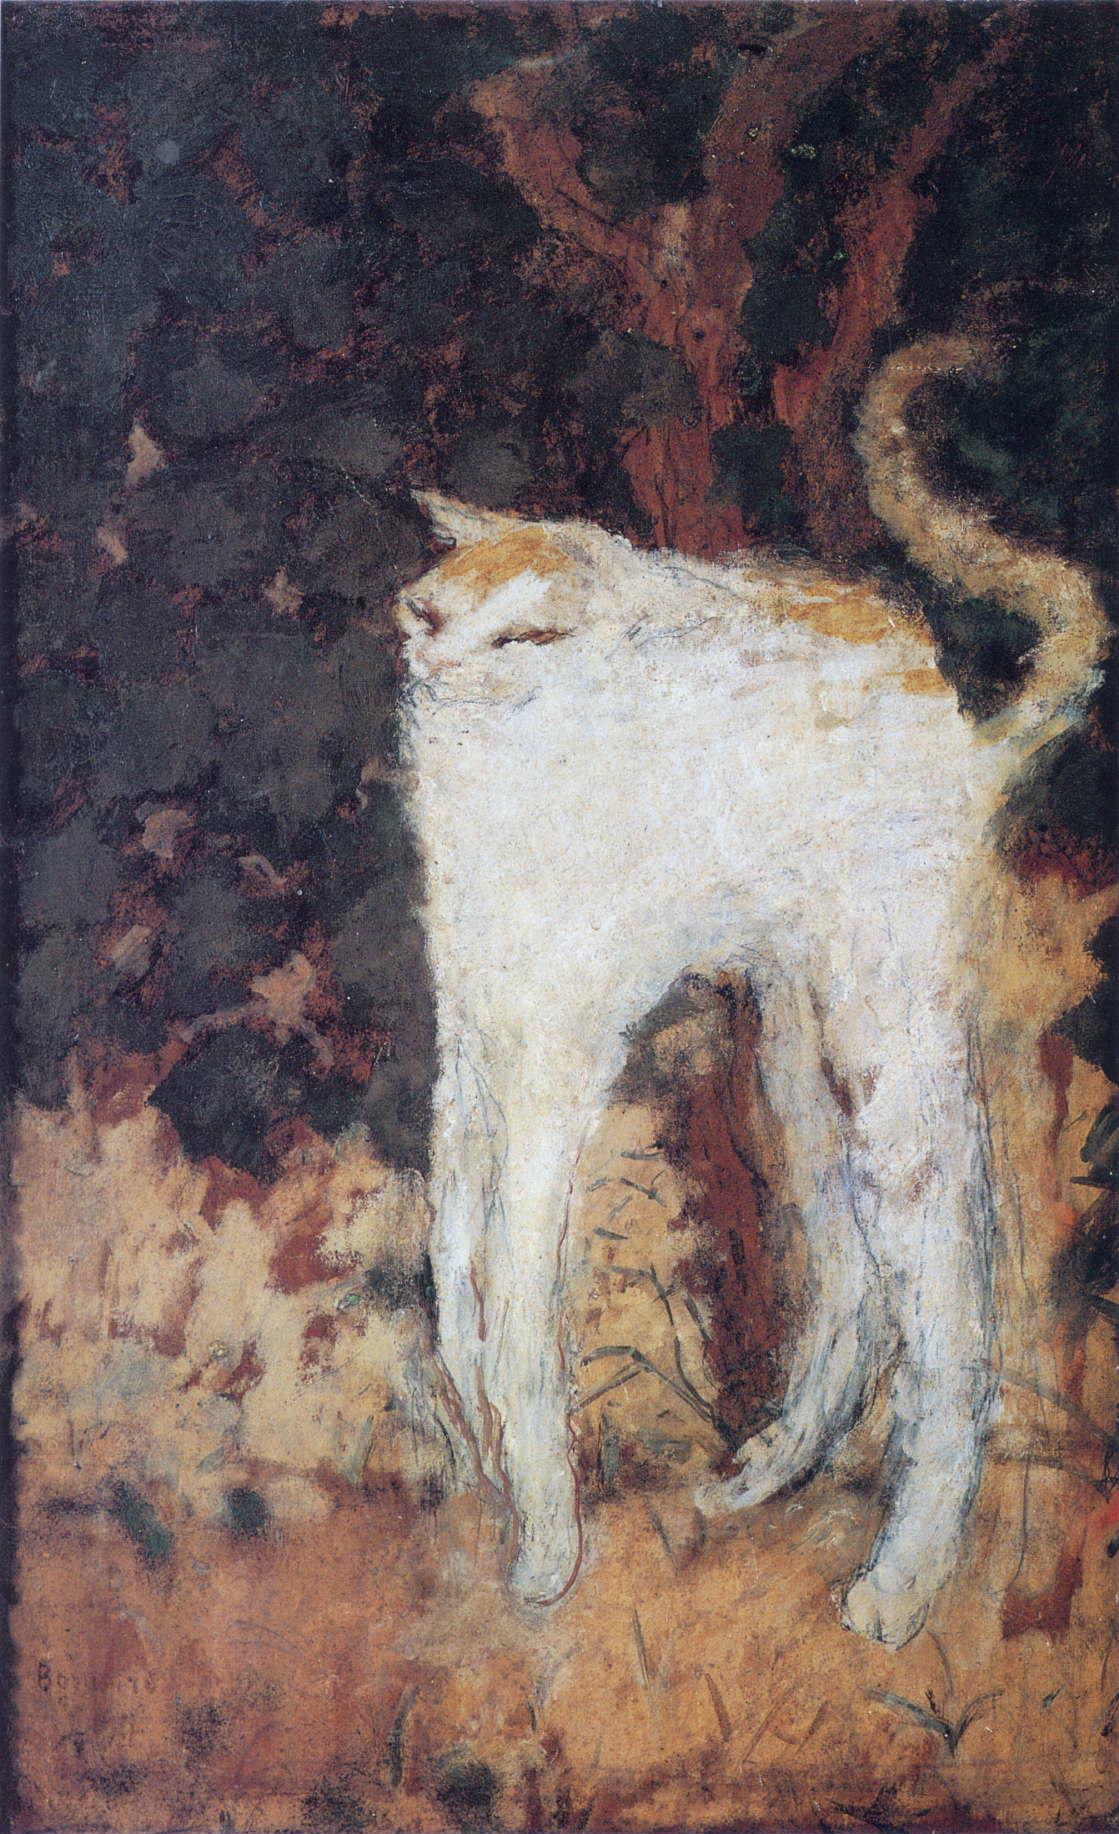 El gato blanco by Pierre Bonnard - 1894 - 51 x 33 cm Musée d'Orsay